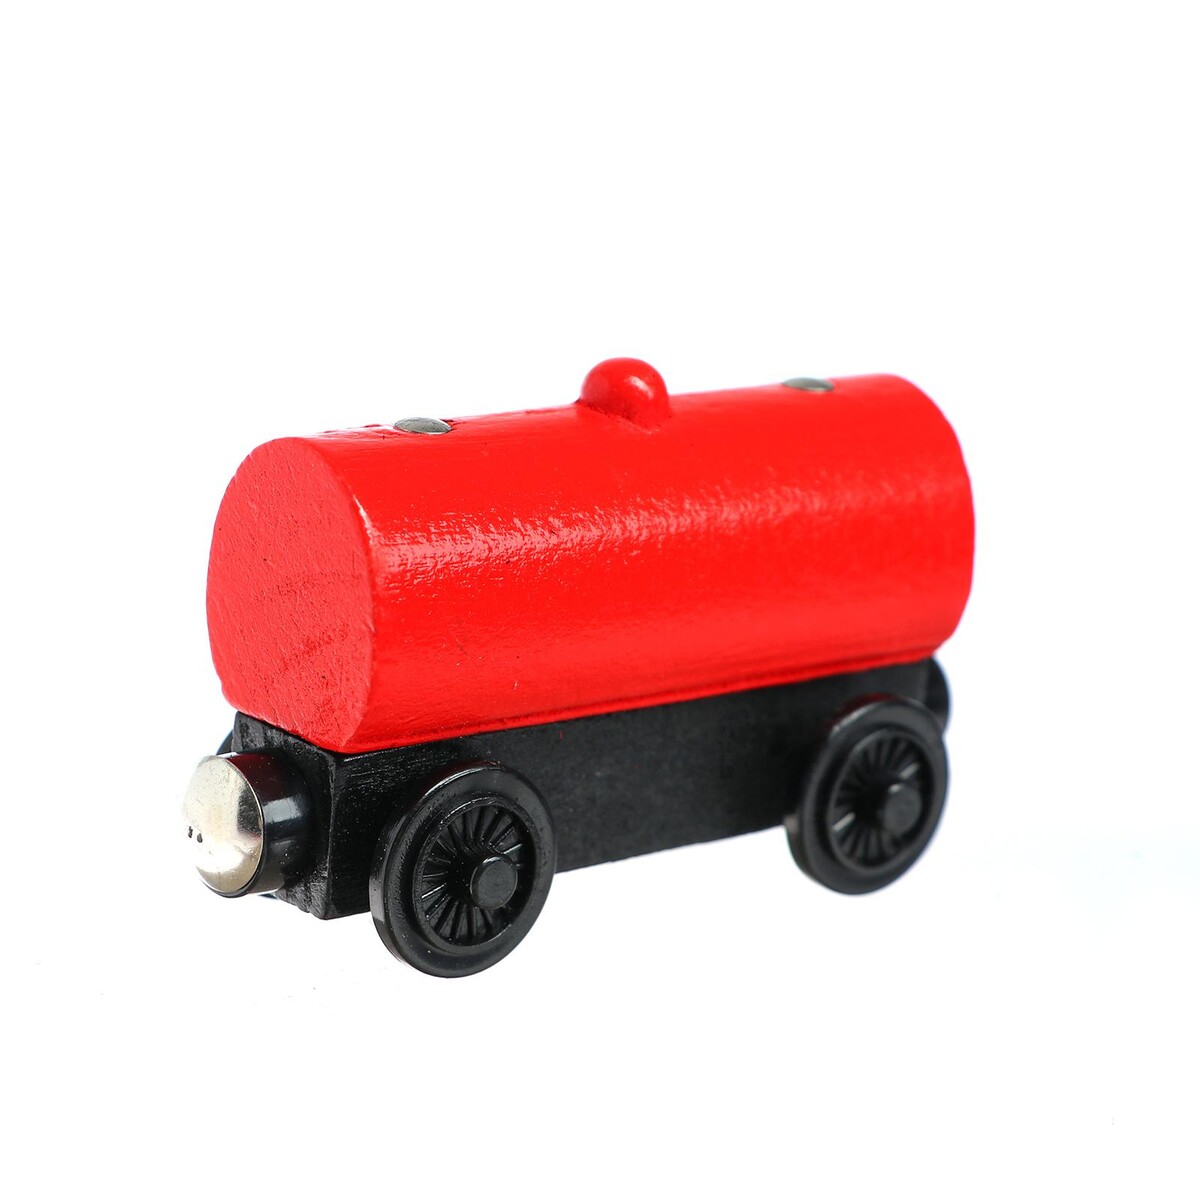 Детский вагончик для железной дороги 3,4×8,5×5,1 см политическая полиция революционеры и железные дороги в начале xx столетия